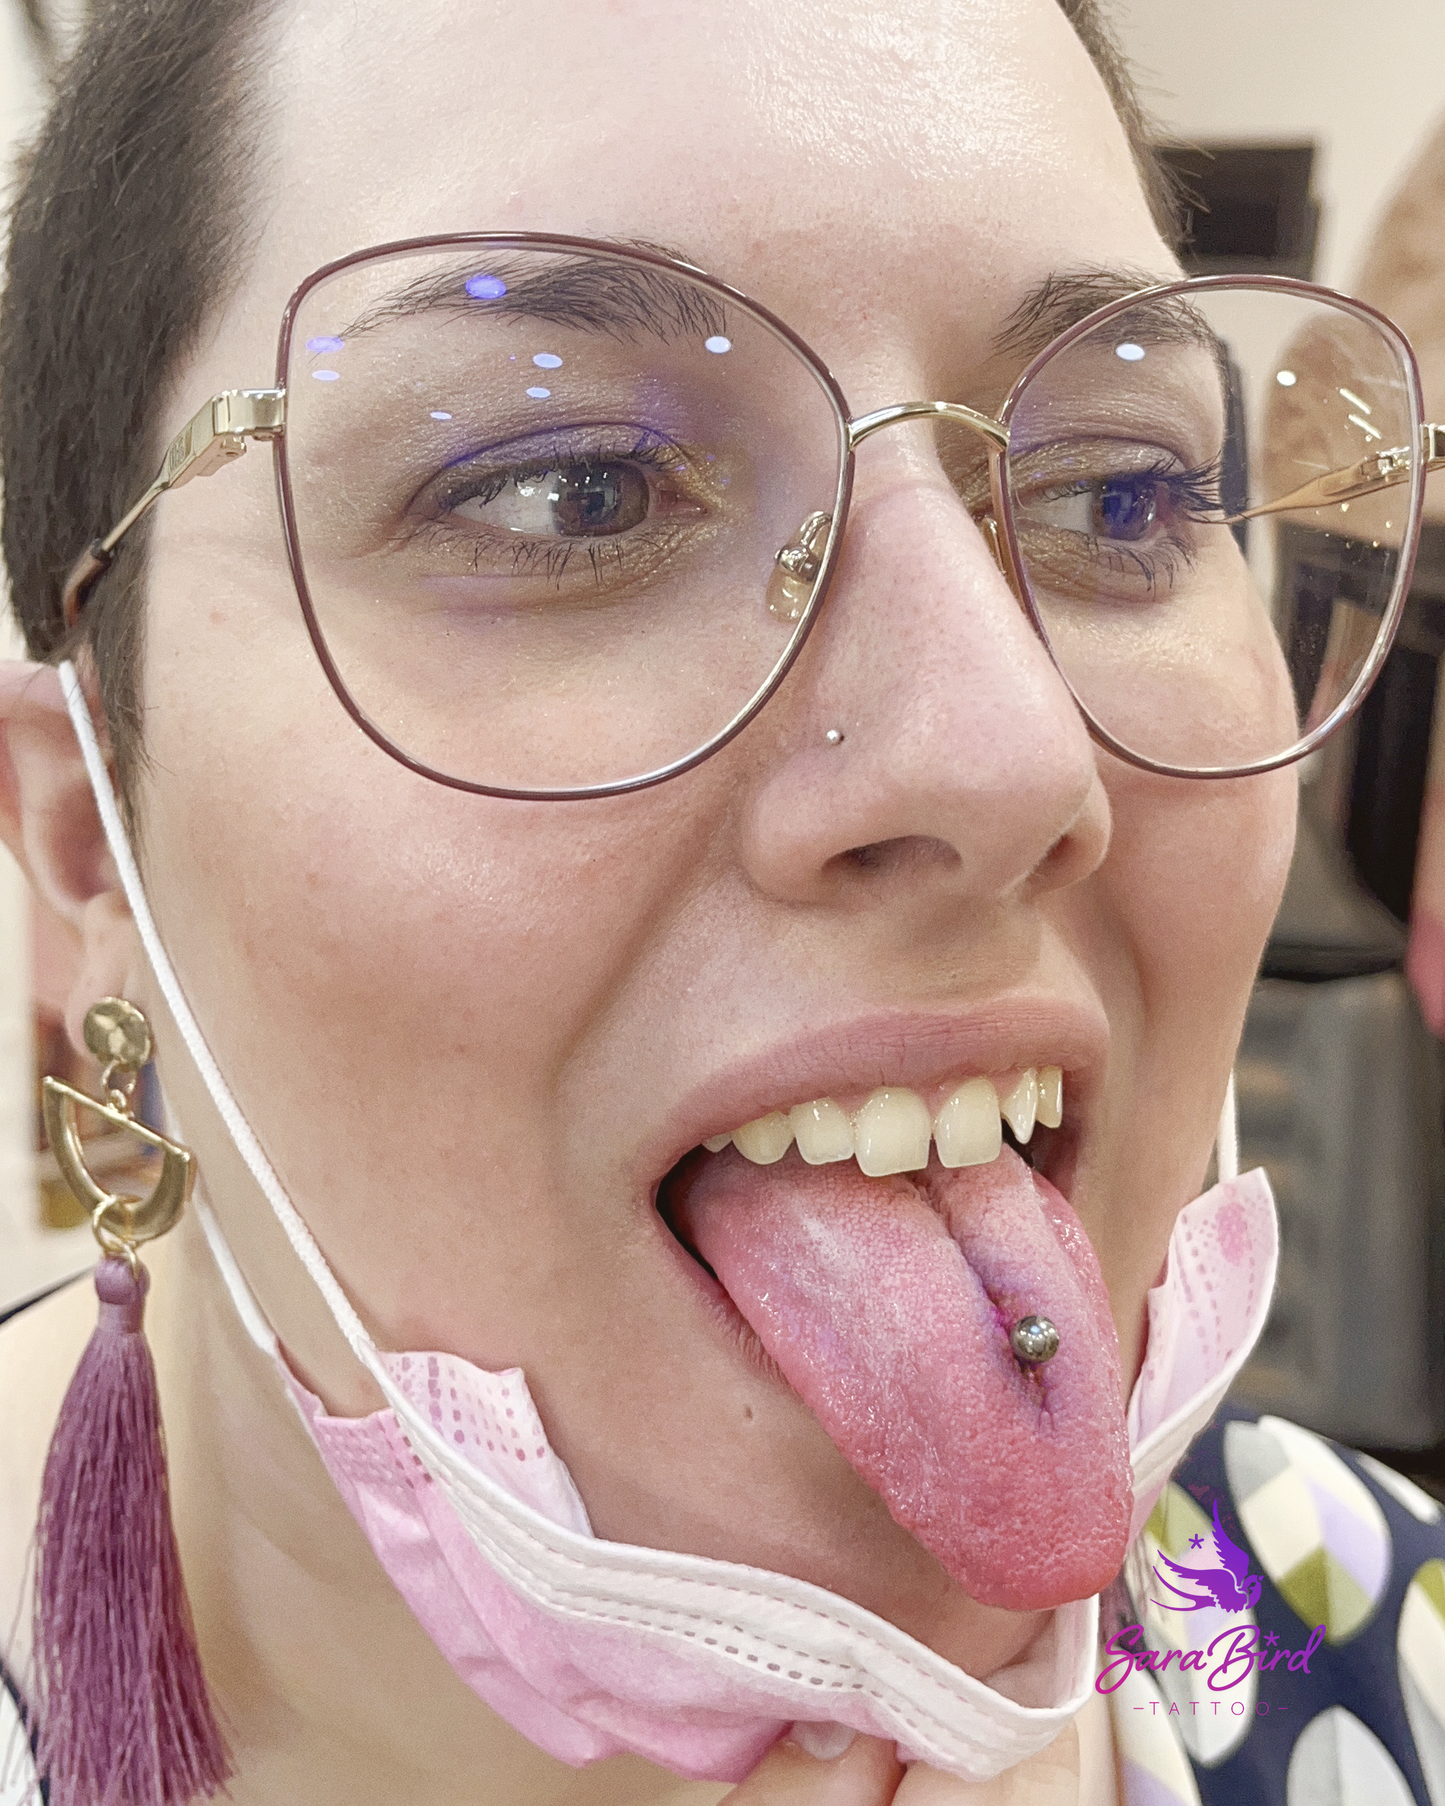 Reparación de labios y lengua con joya de titanio + anestésico